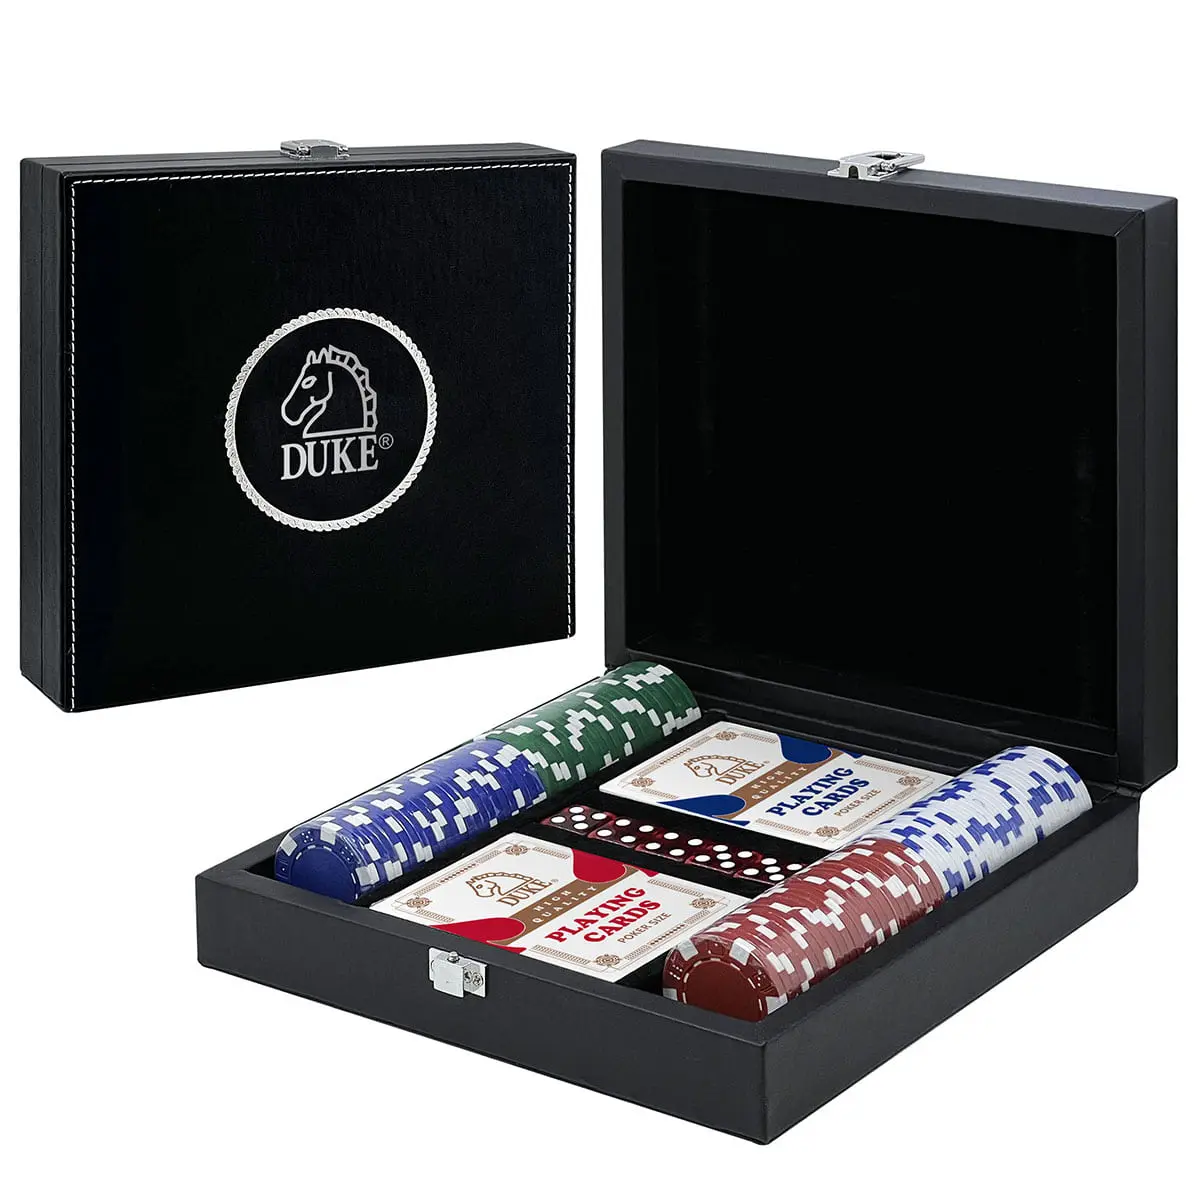 Jogo de tabuleiro e jogo de cartas - Produtos de papel Co. de Kuo Kau, Ltd.